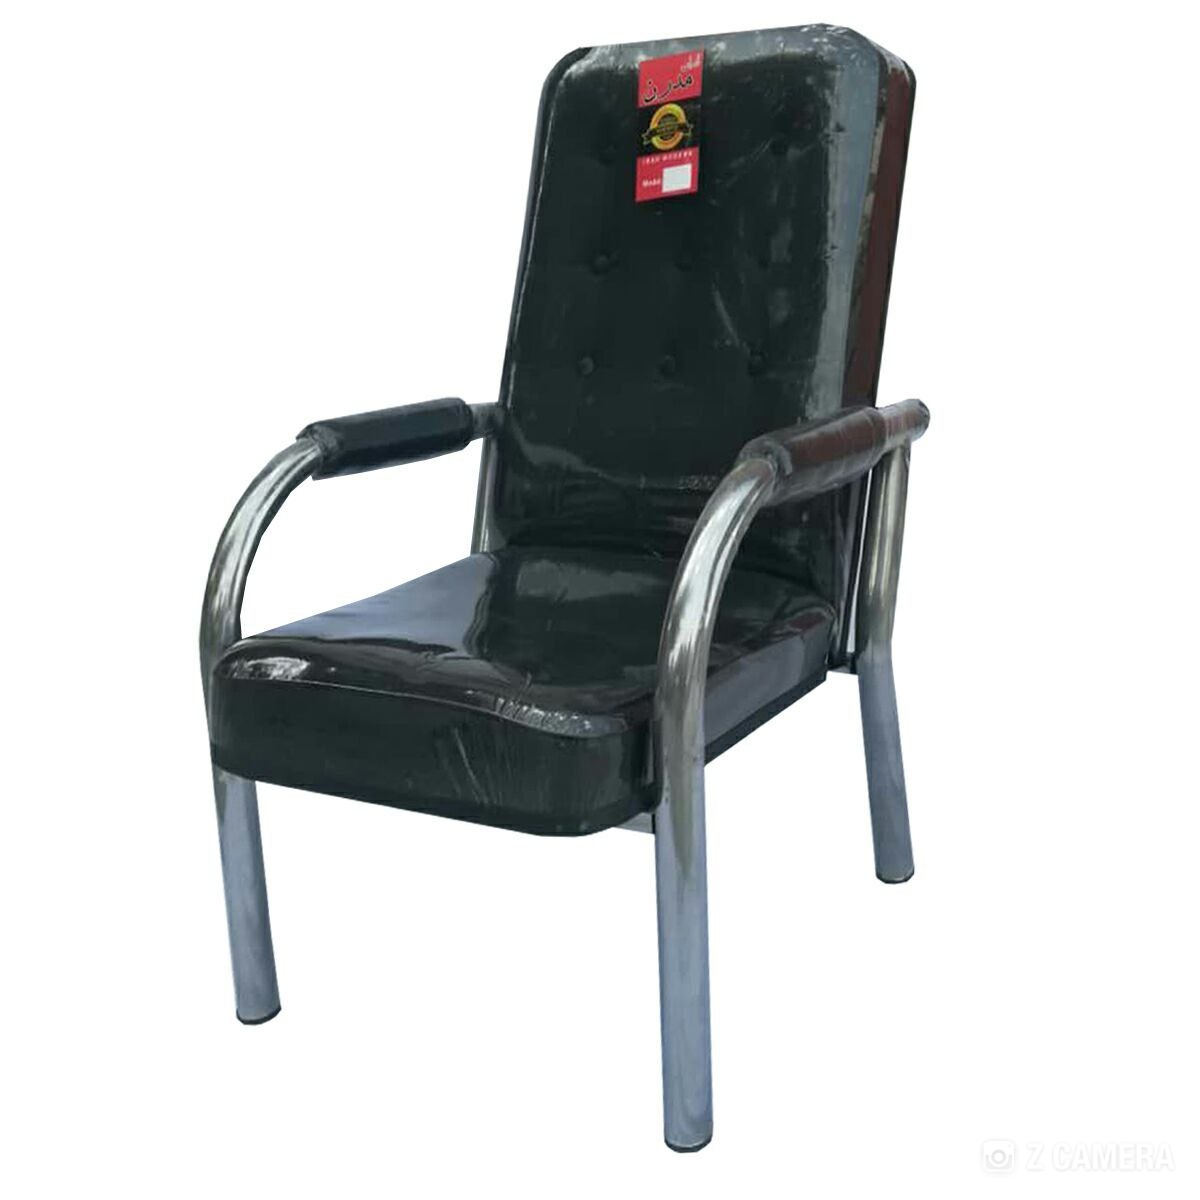 صندلی اداری مدل A956